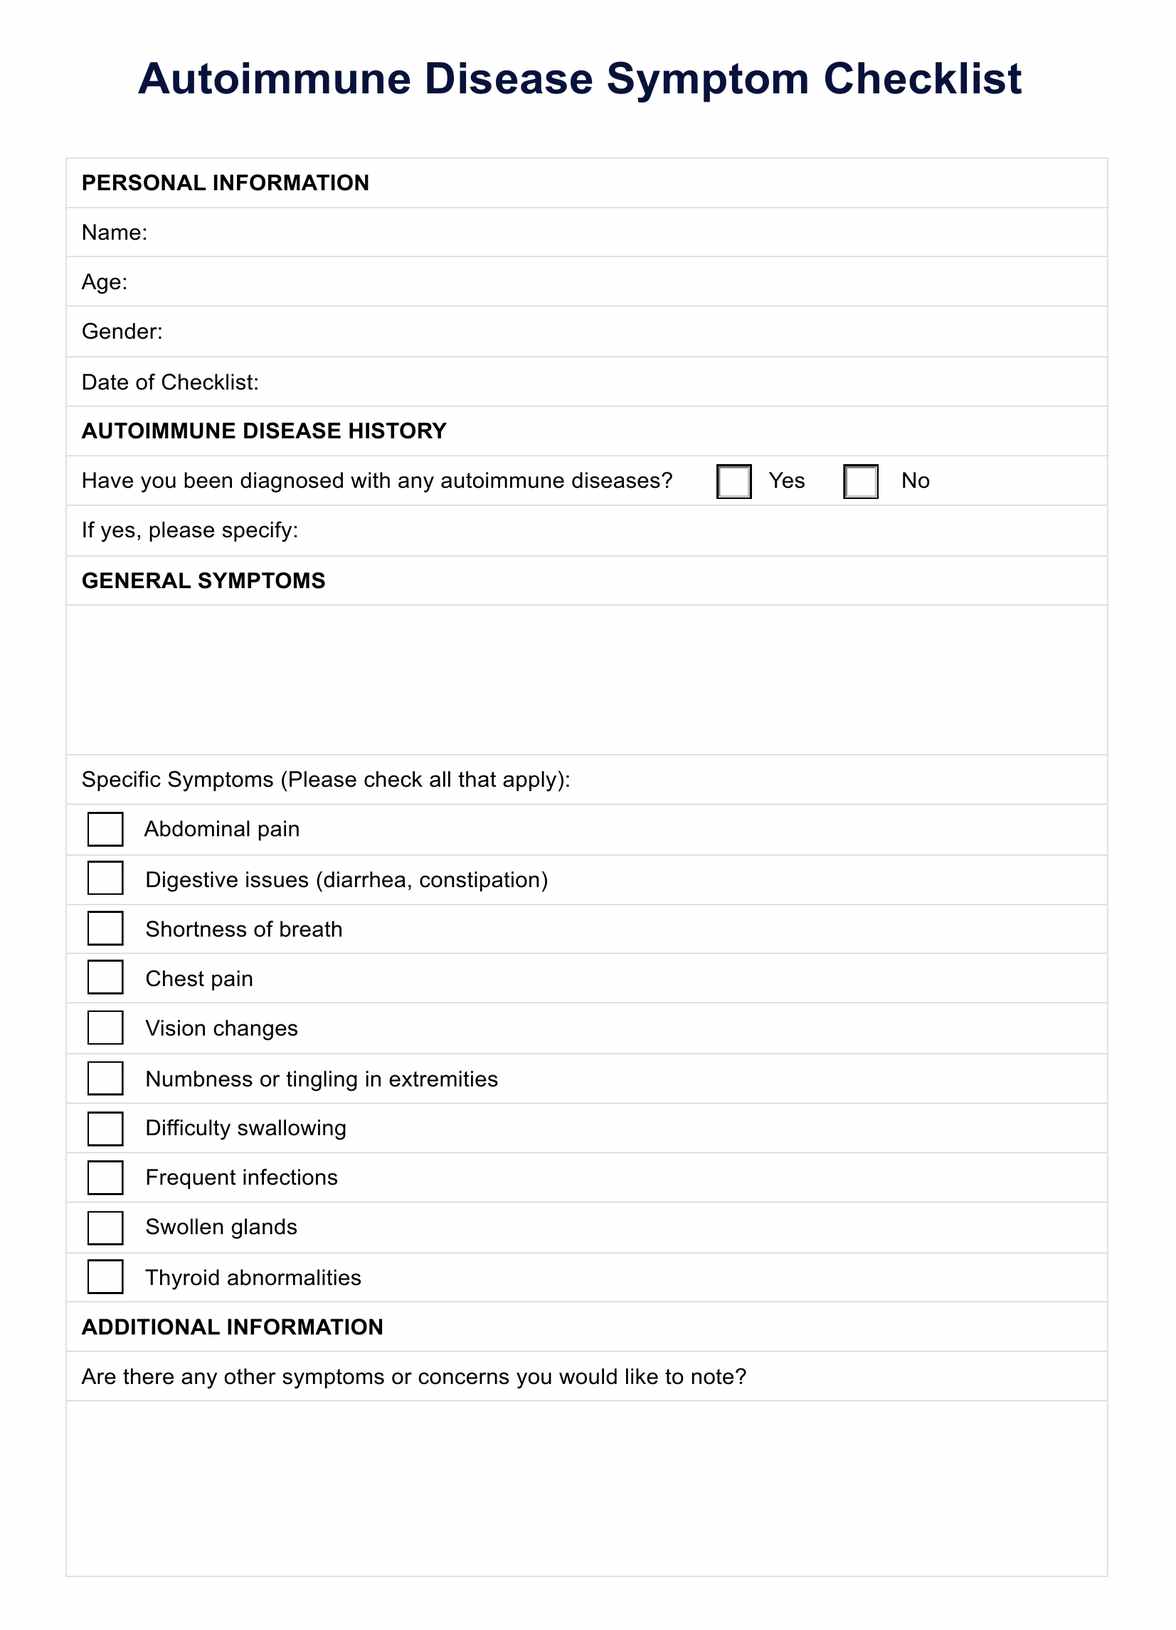 Autoimmune Disease Symptom Checklist PDF Example